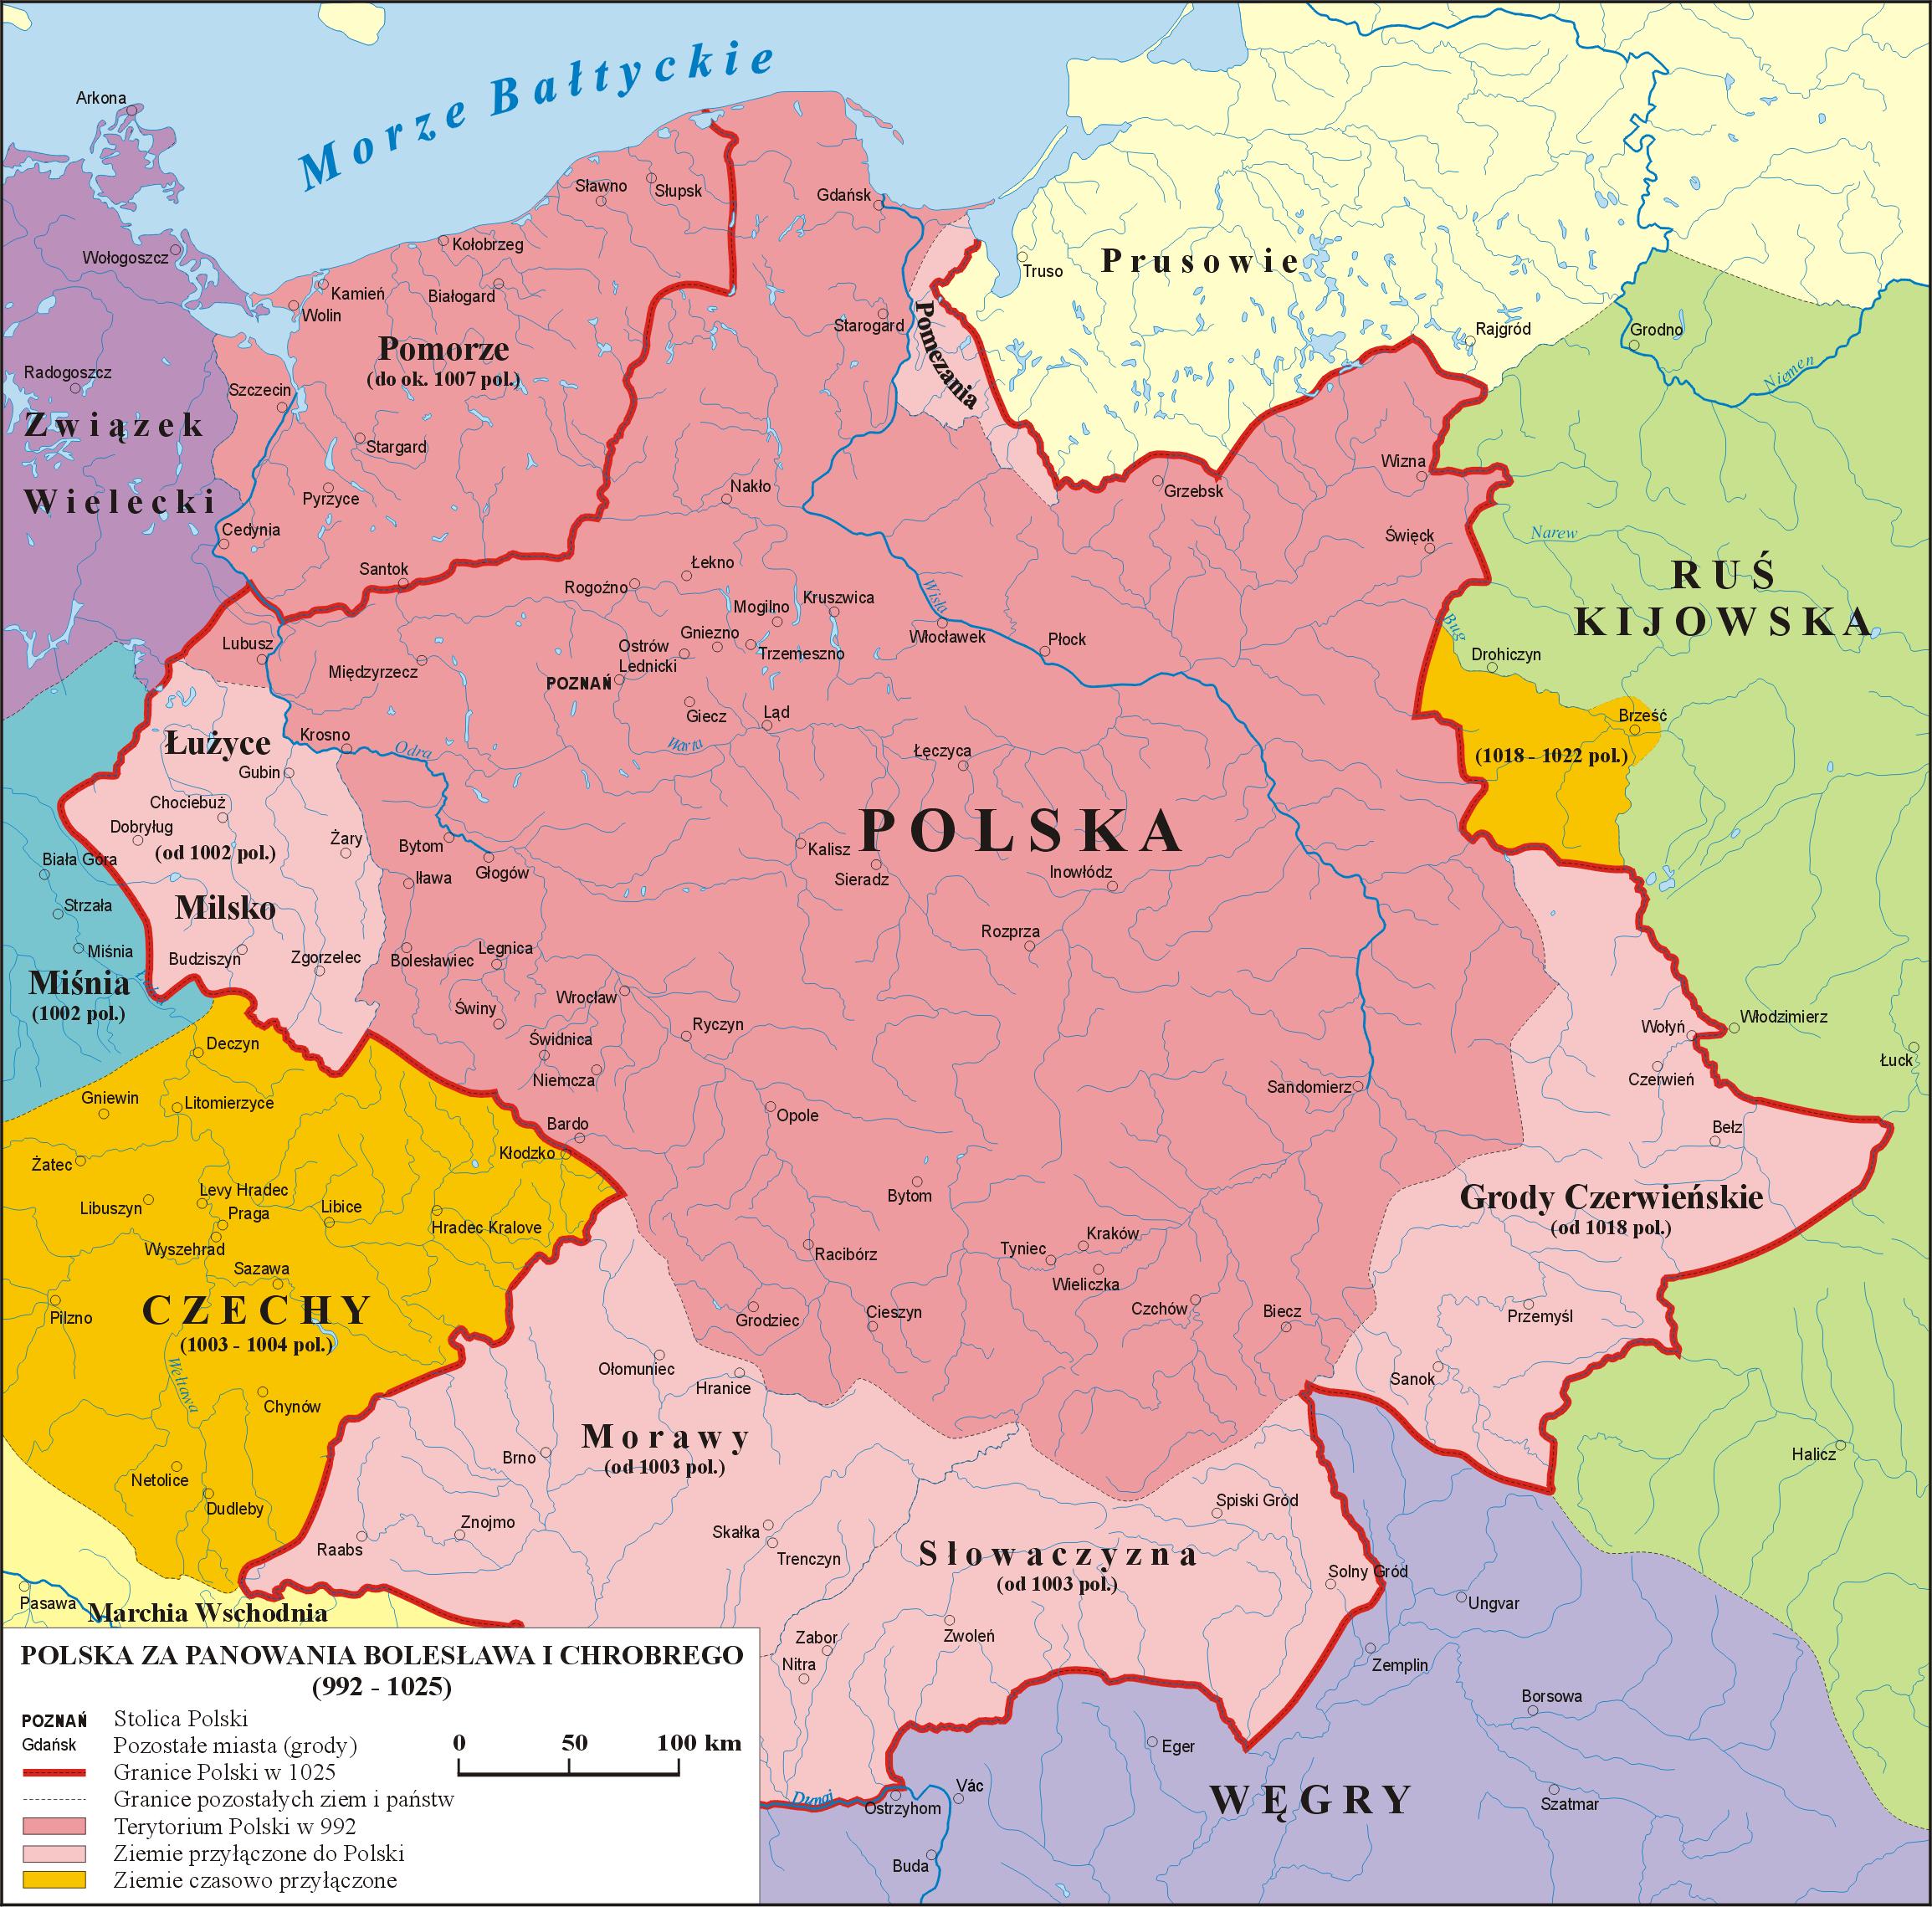 一的国家,这个国家存在了近800年,直到1795年波兰被俄普奥三国瓜分而